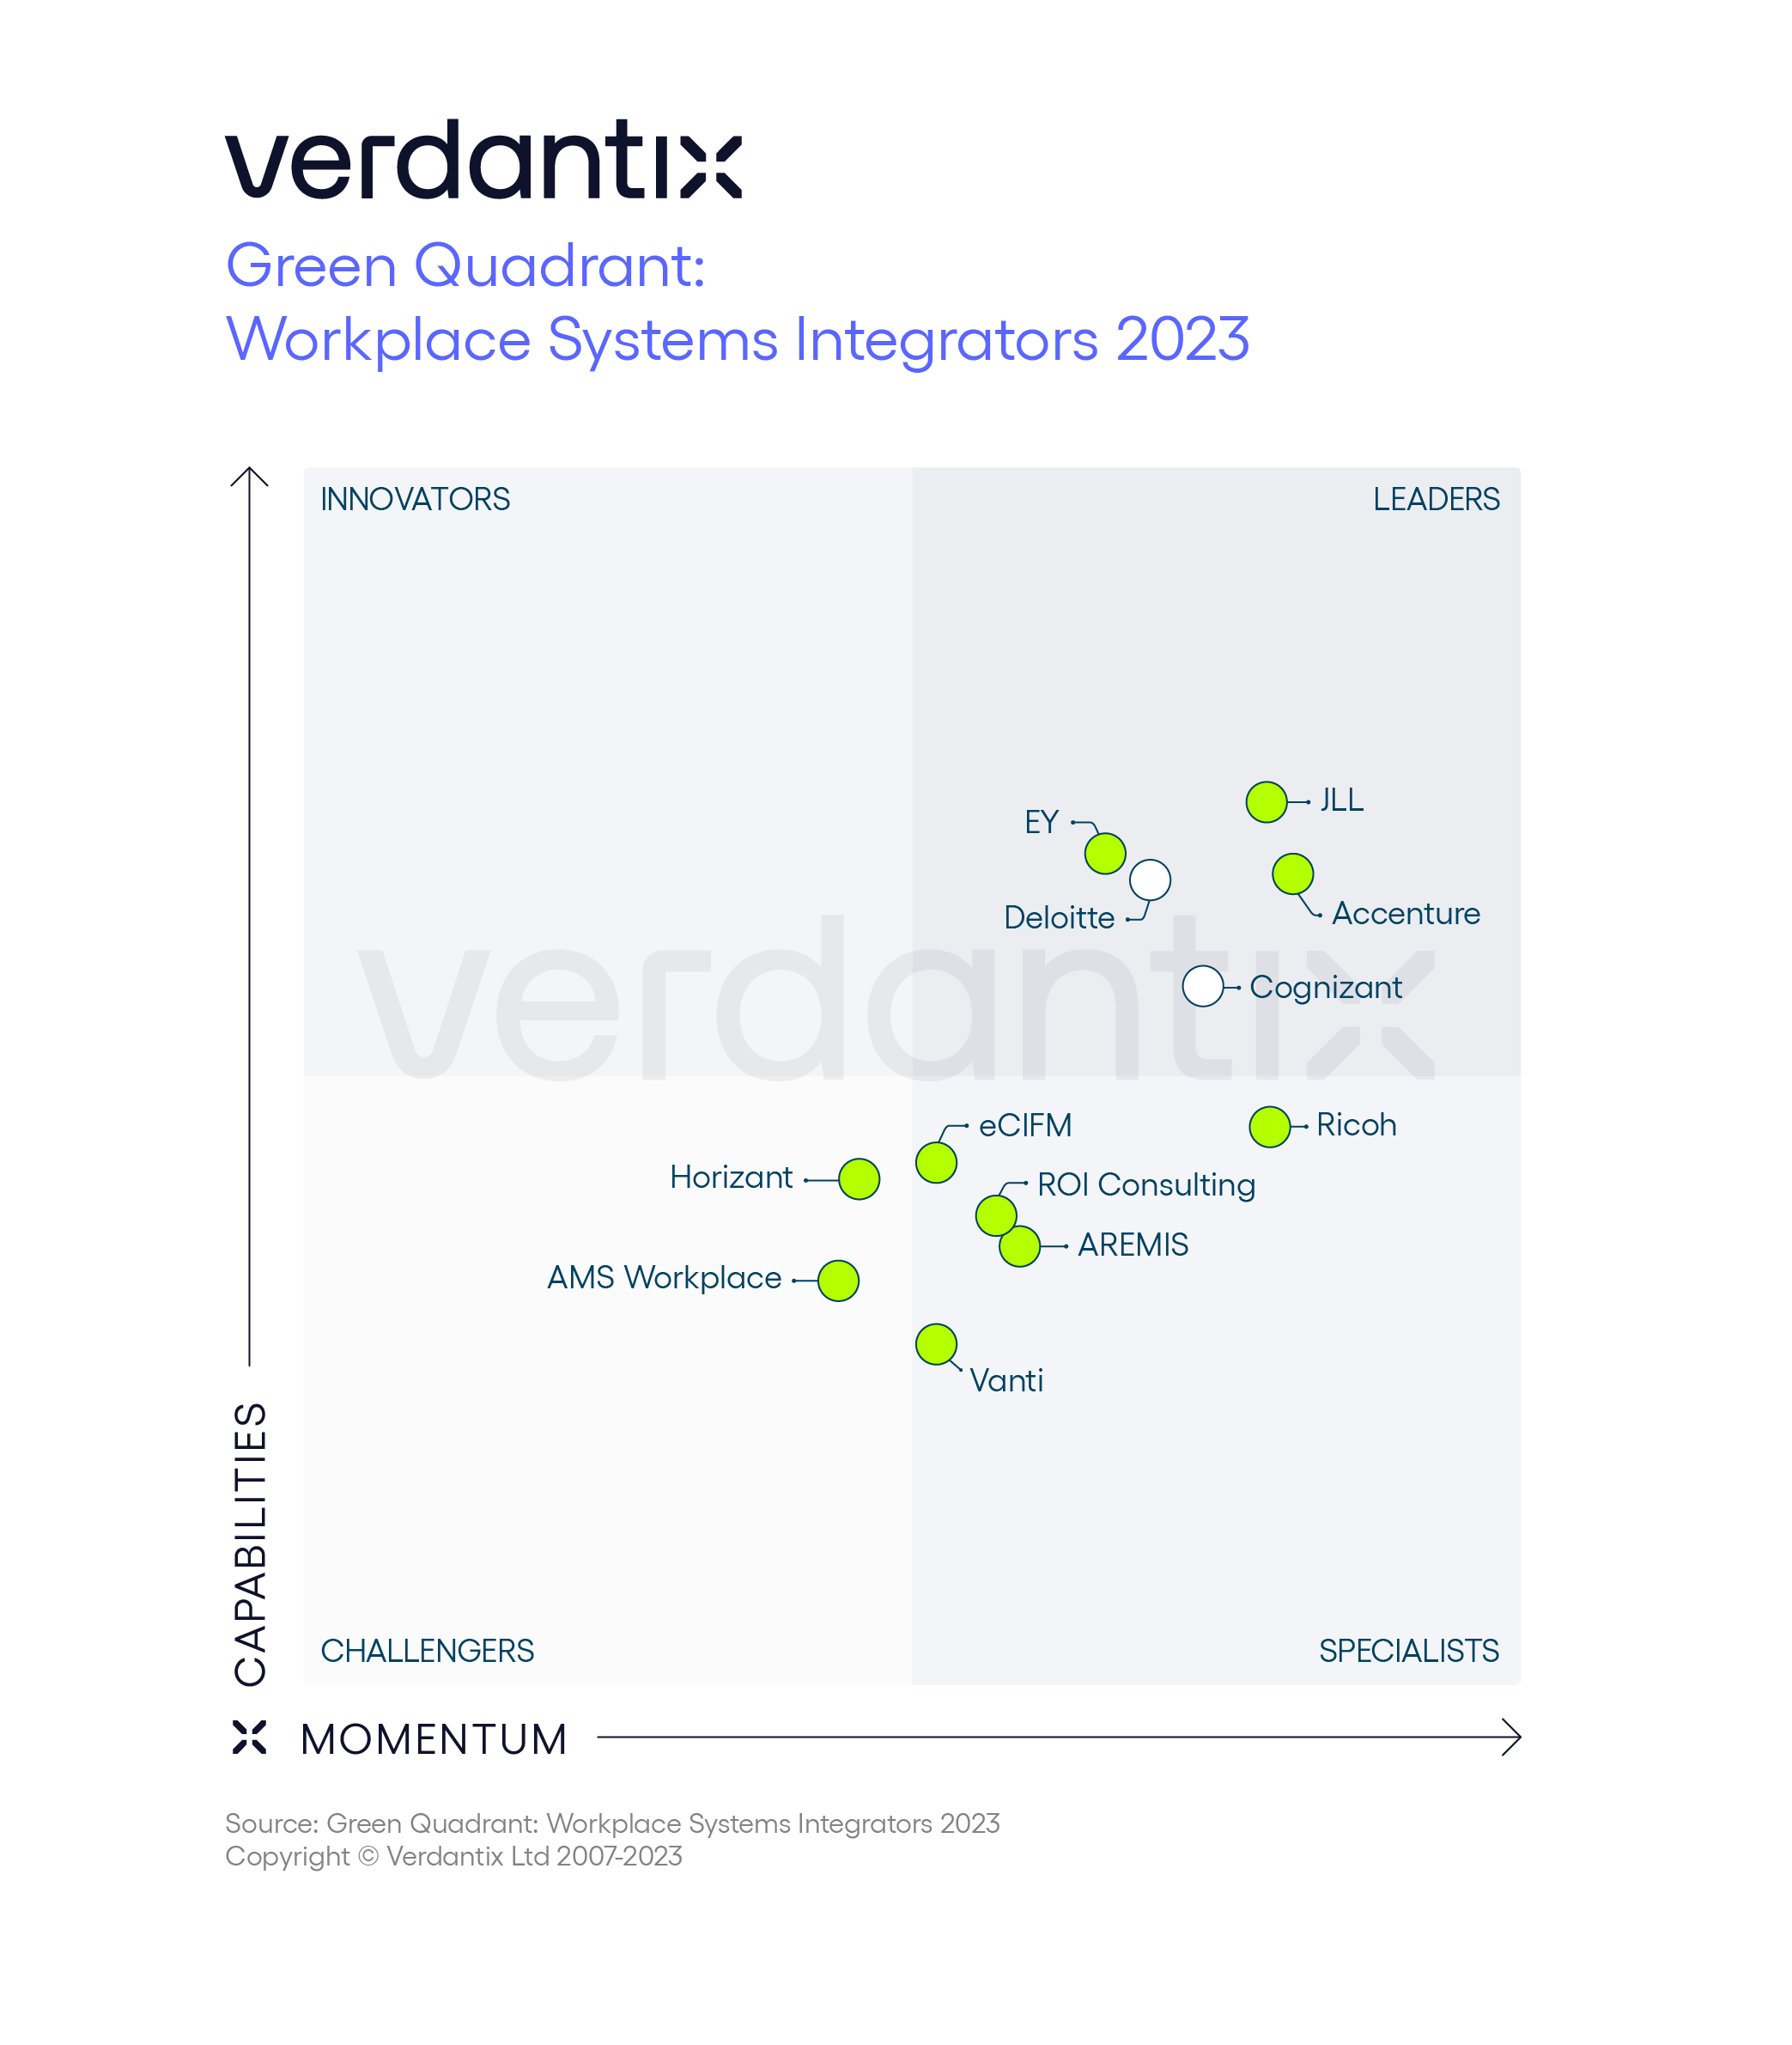 Verdantix sitúa a Ricoh como especialista en la categoría “Workplace System Integrator” en su Cuadrante Verde 2023